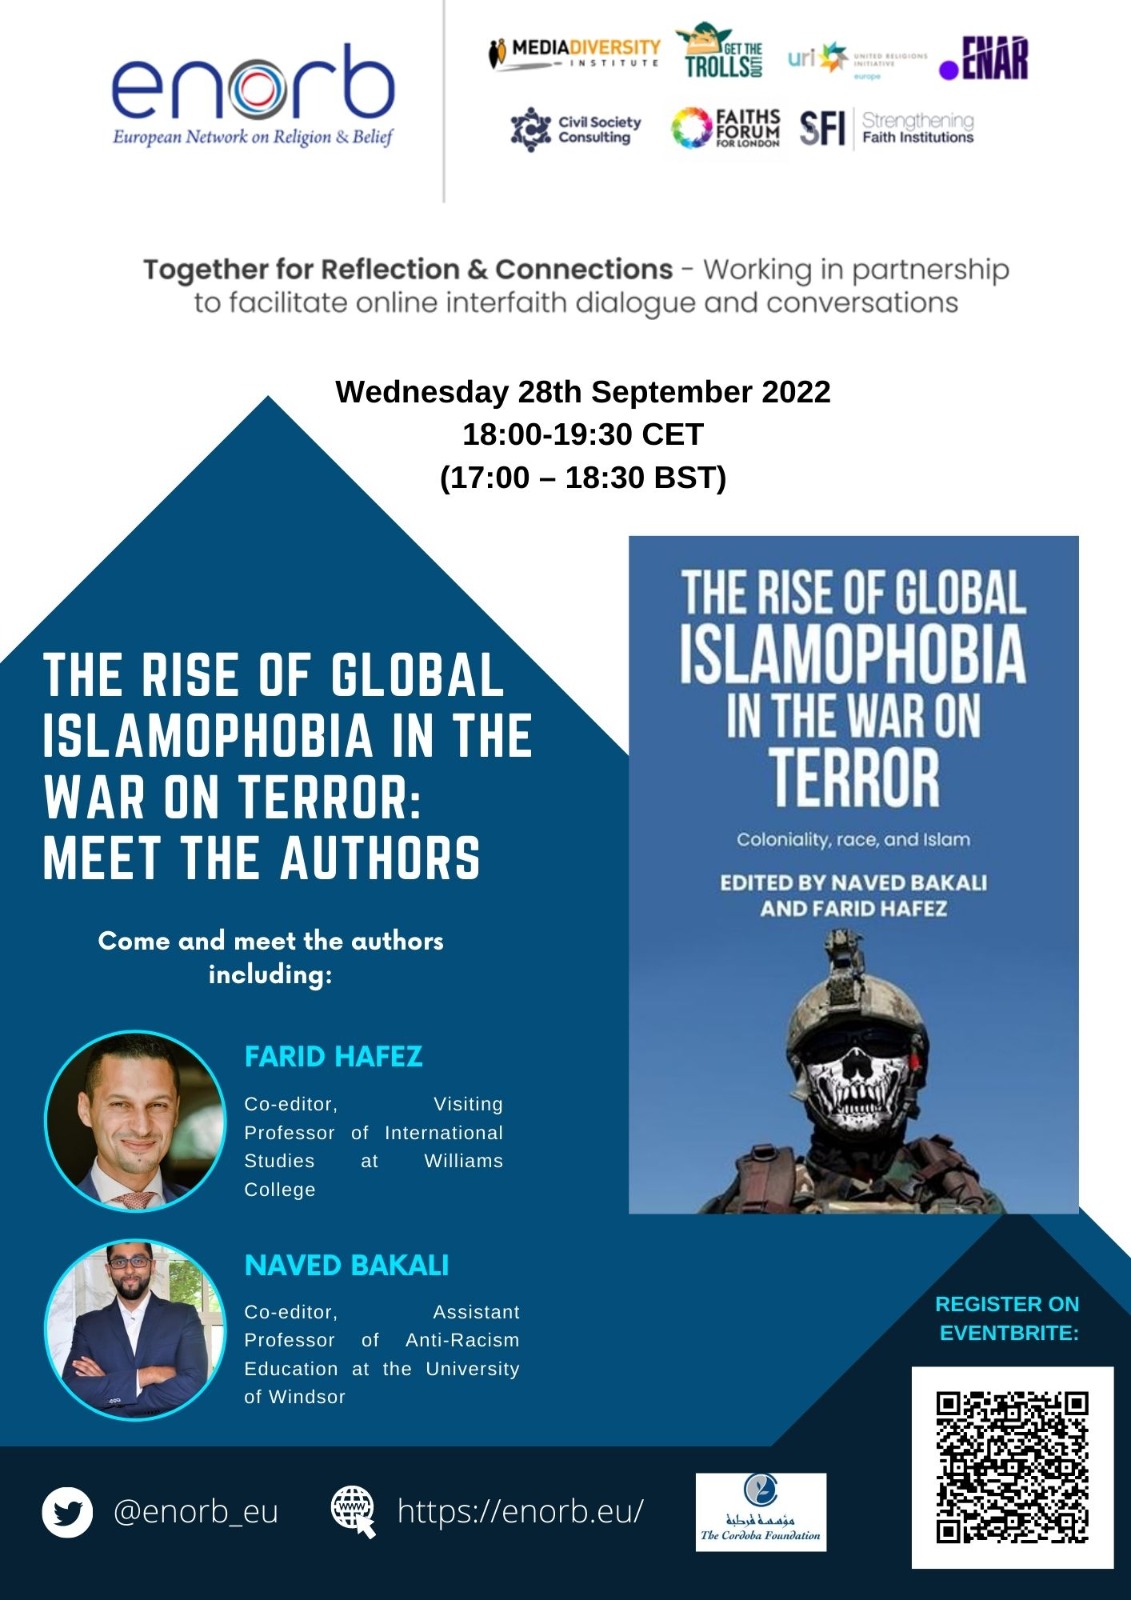 The rise of Global Islamophobia in the war on terror